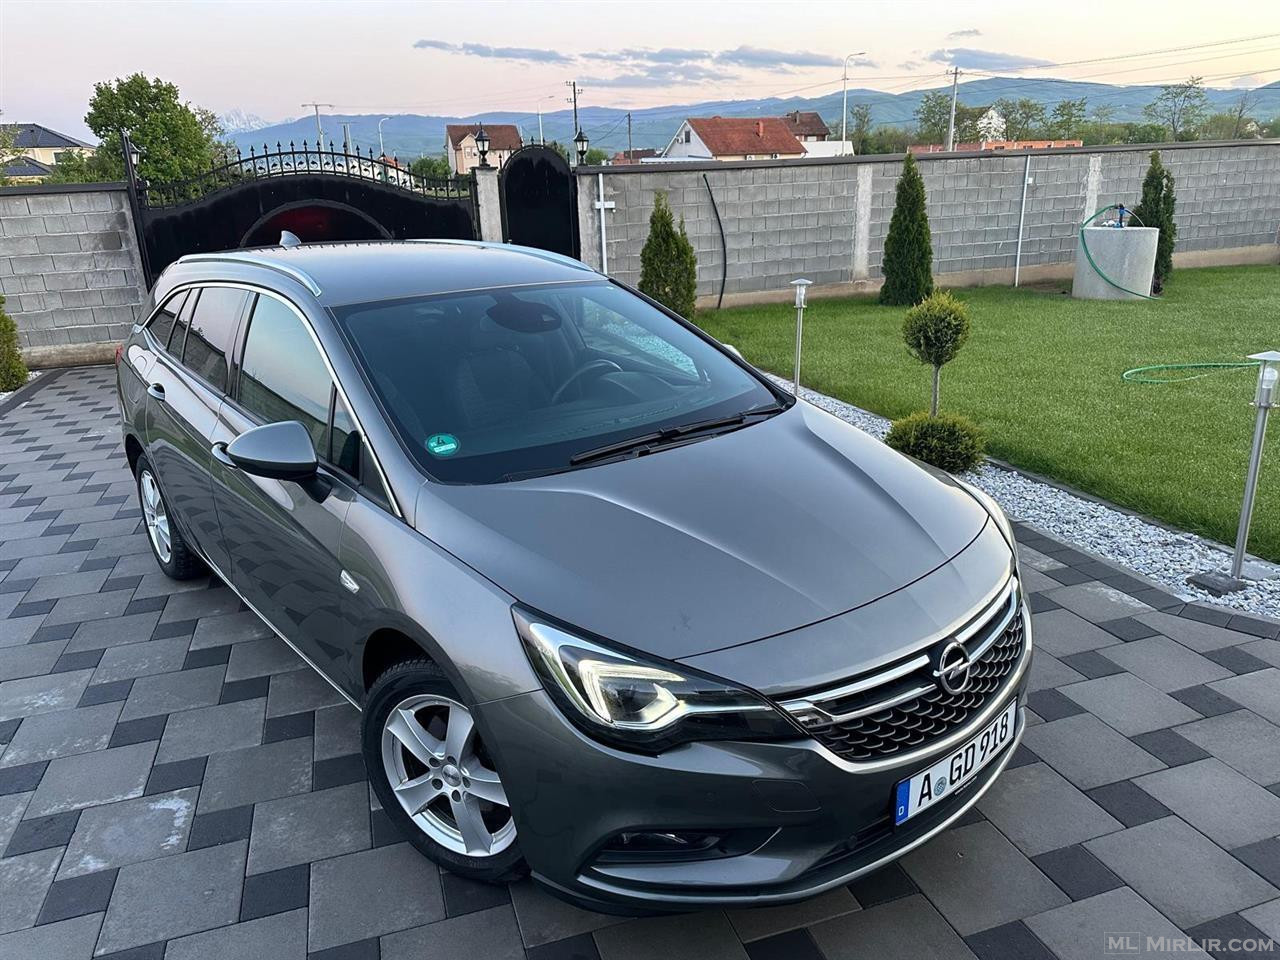 Opel astra k 1.6 dizell 2017 160ps